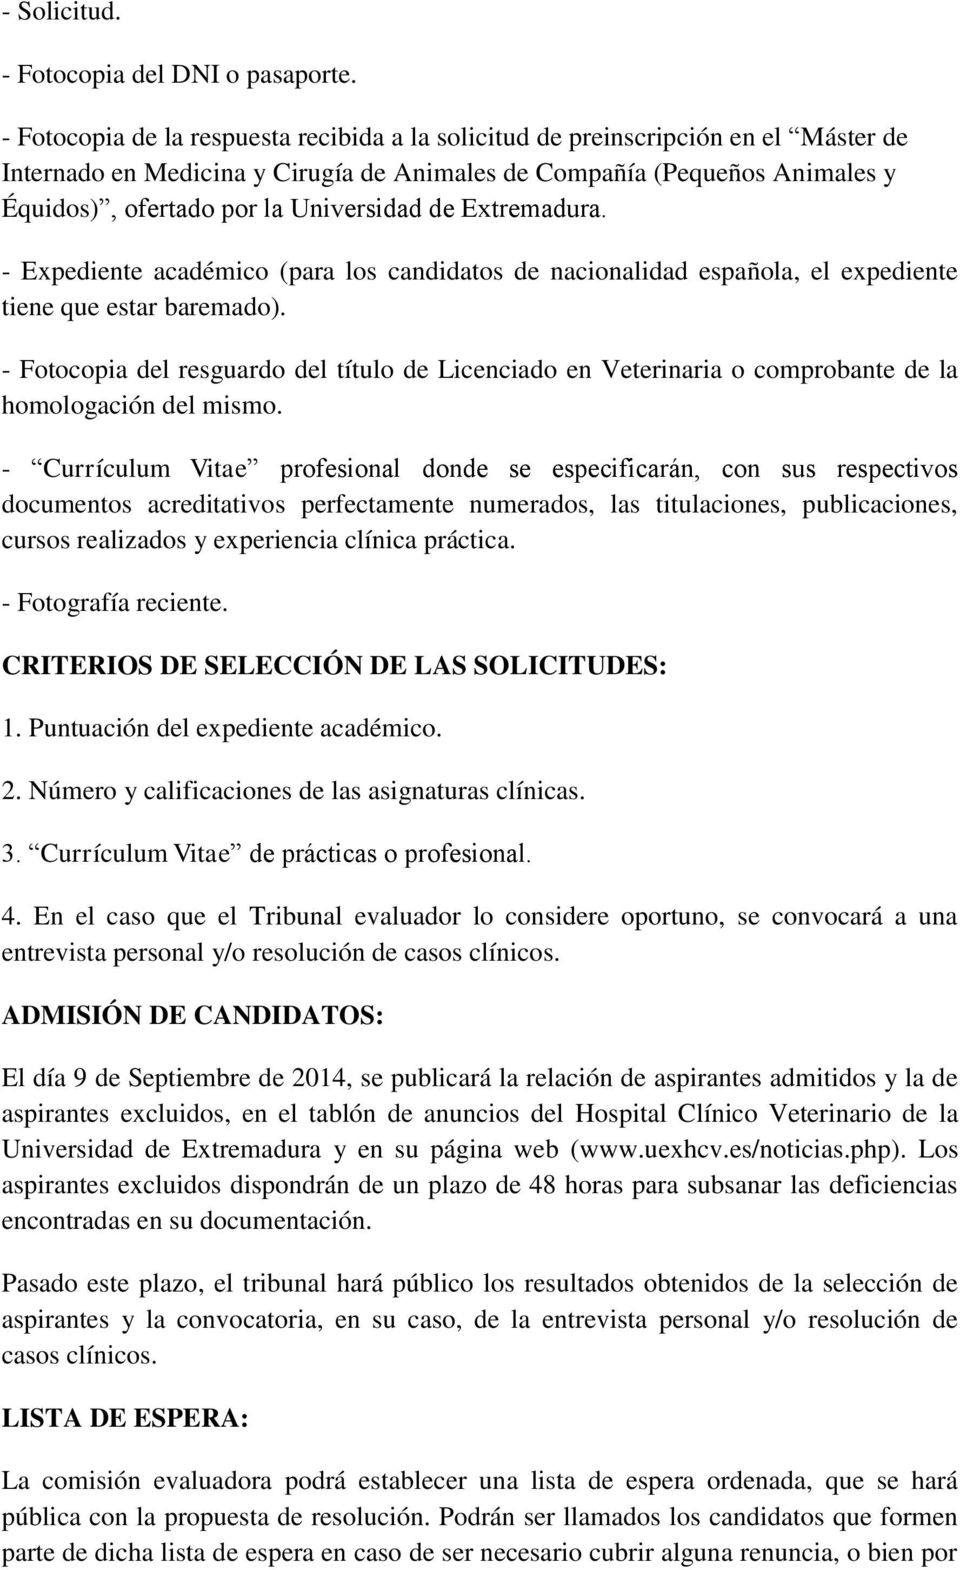 Universidad de Extremadura. - Expediente académico (para los candidatos de nacionalidad española, el expediente tiene que estar baremado).